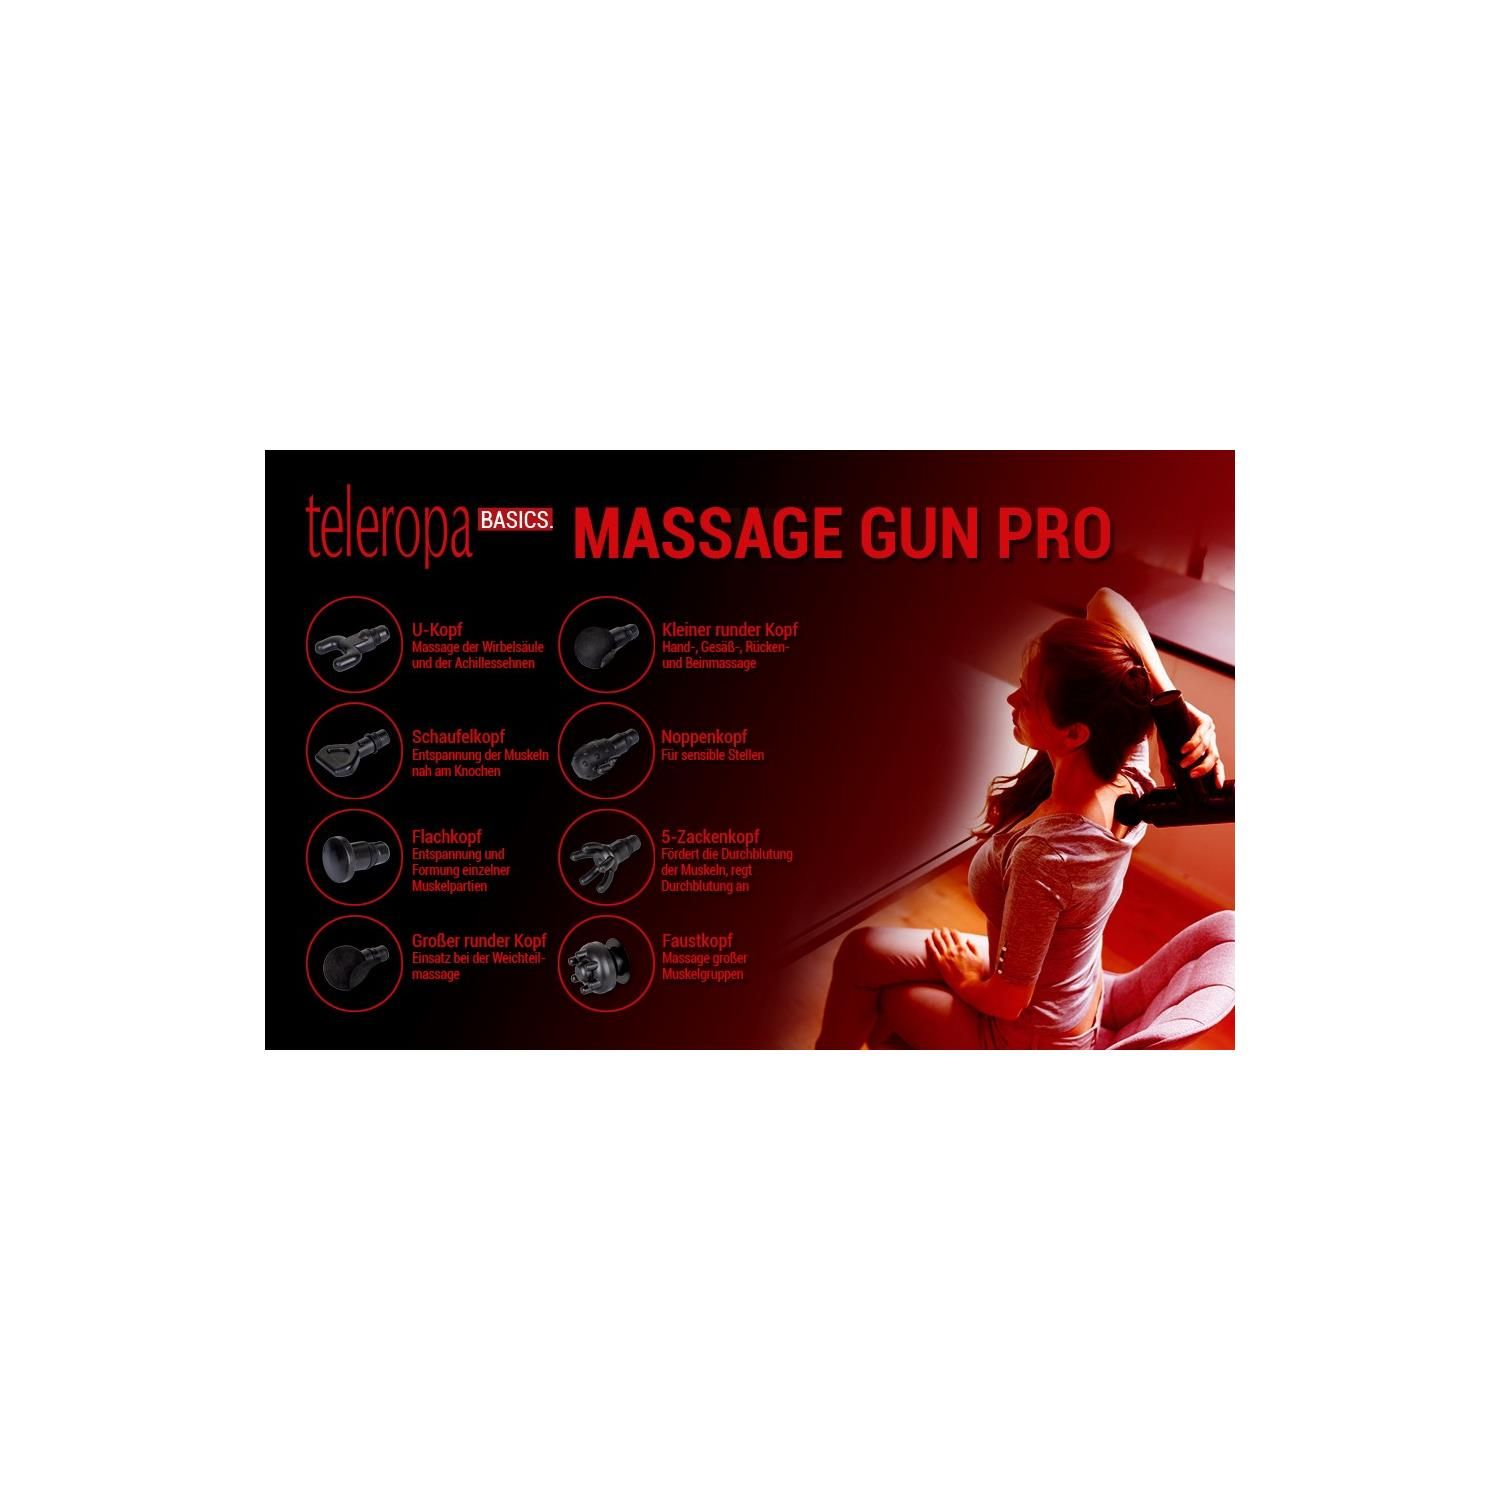 TELEROPA Gun BASICS Massage-Pistole Pro Massage